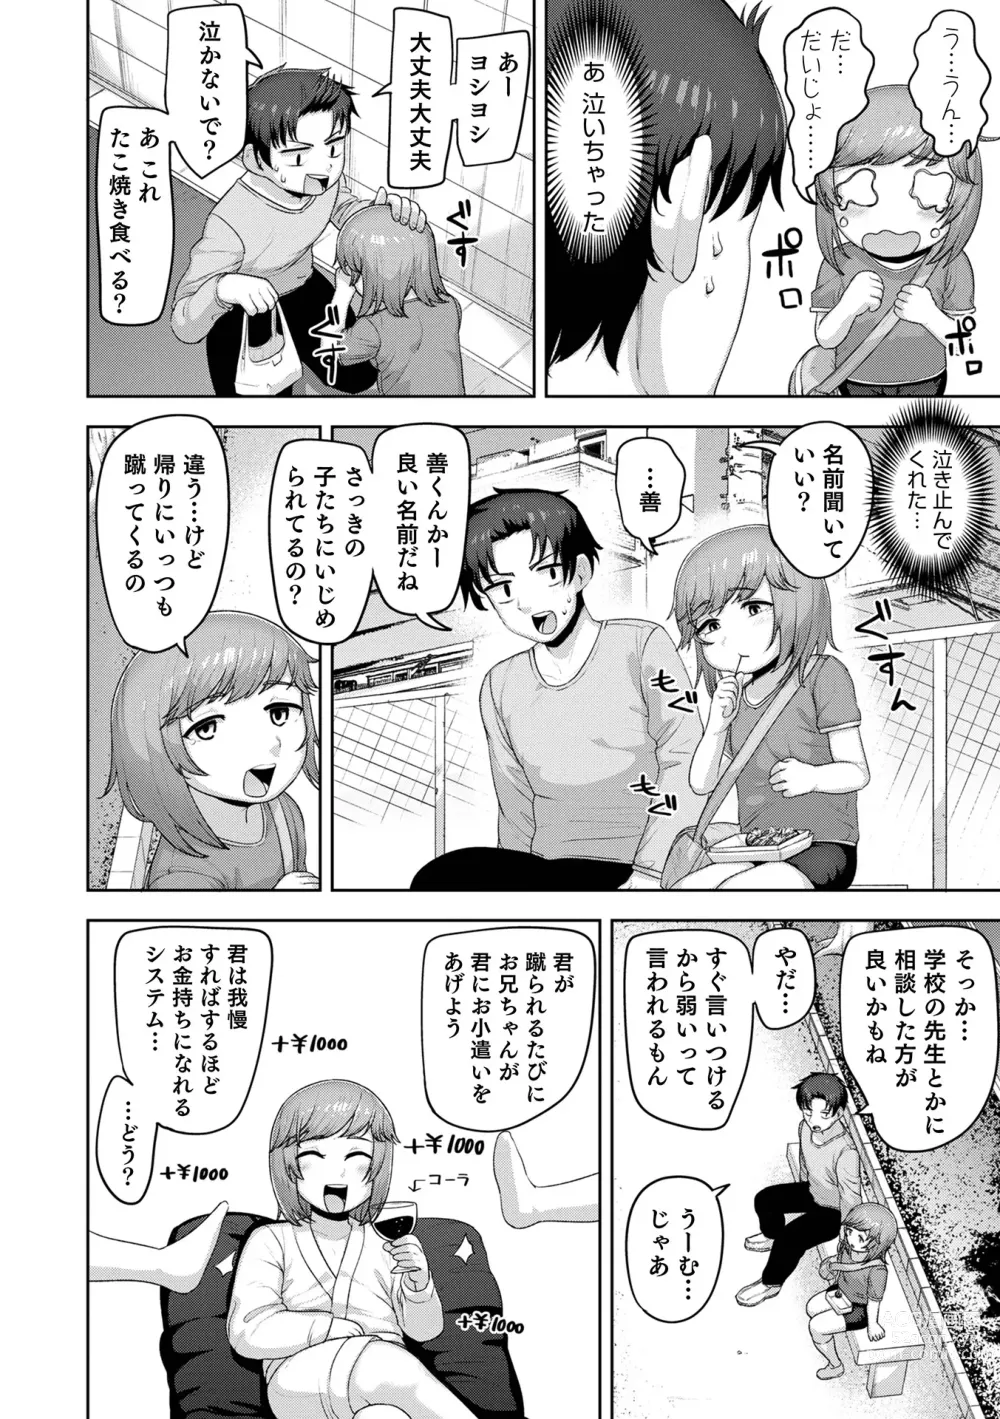 Page 8 of manga Muchiniku Otokonoko Tenshi’s